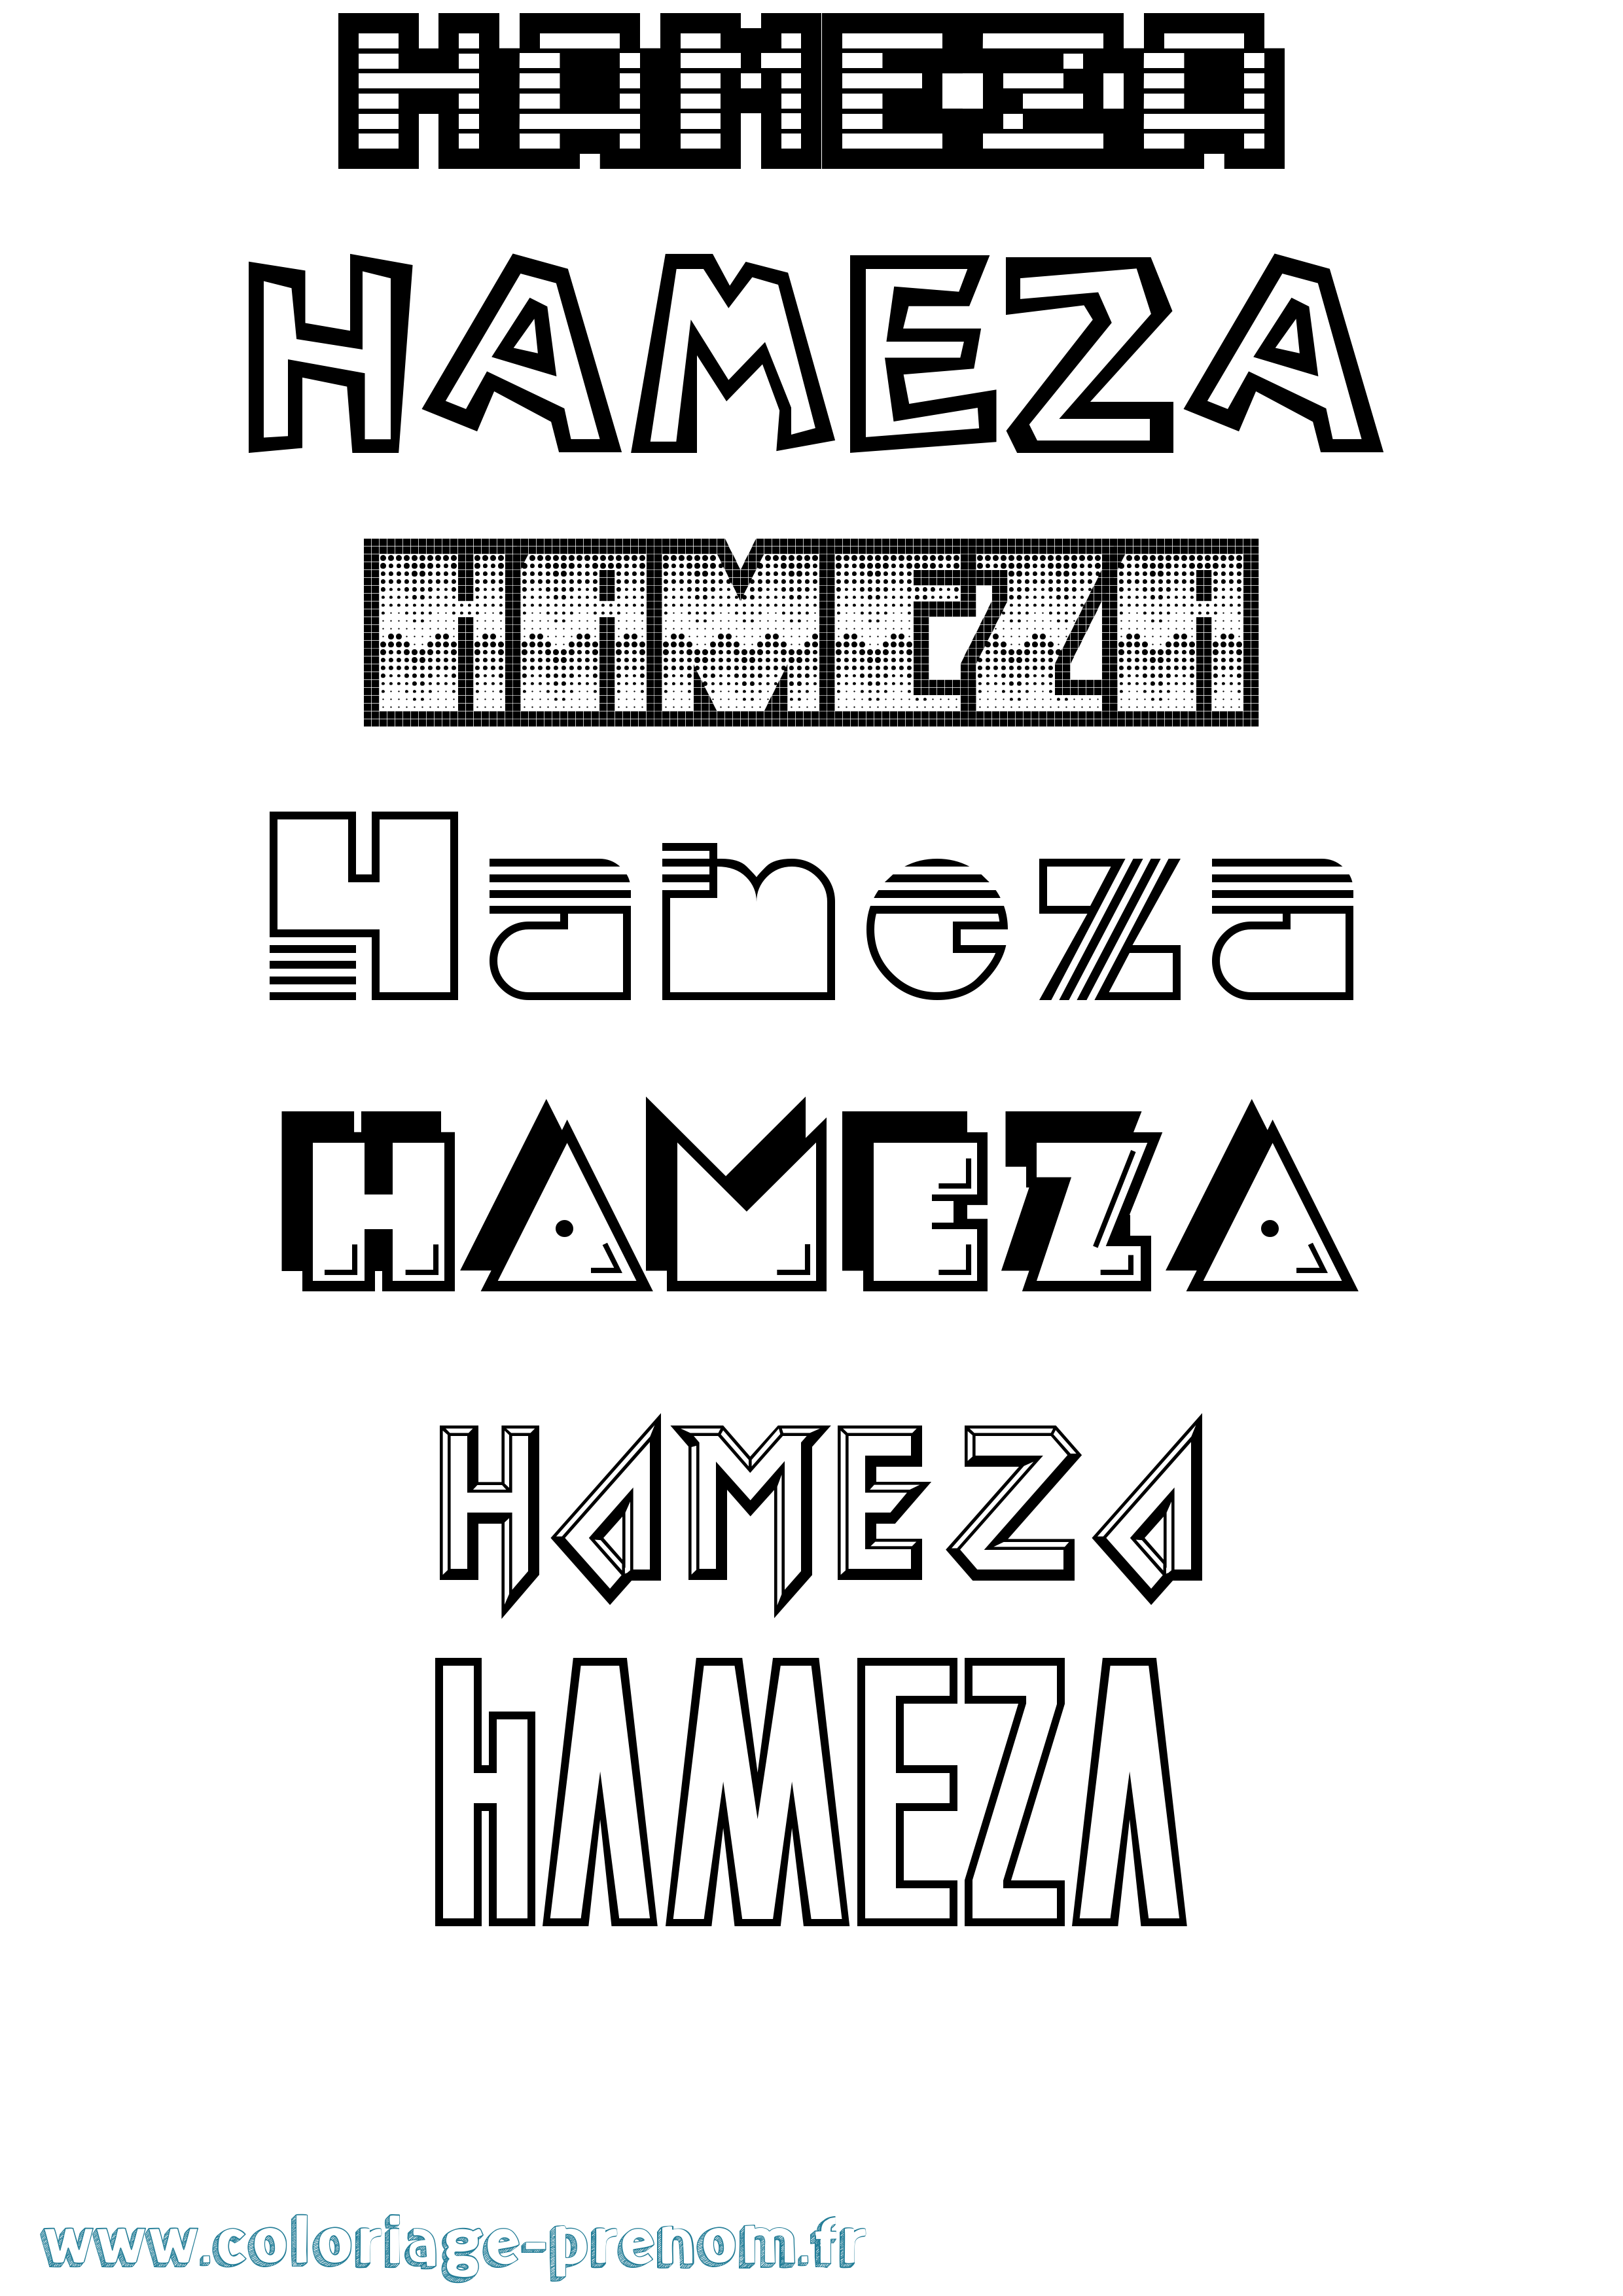 Coloriage prénom Hameza Jeux Vidéos